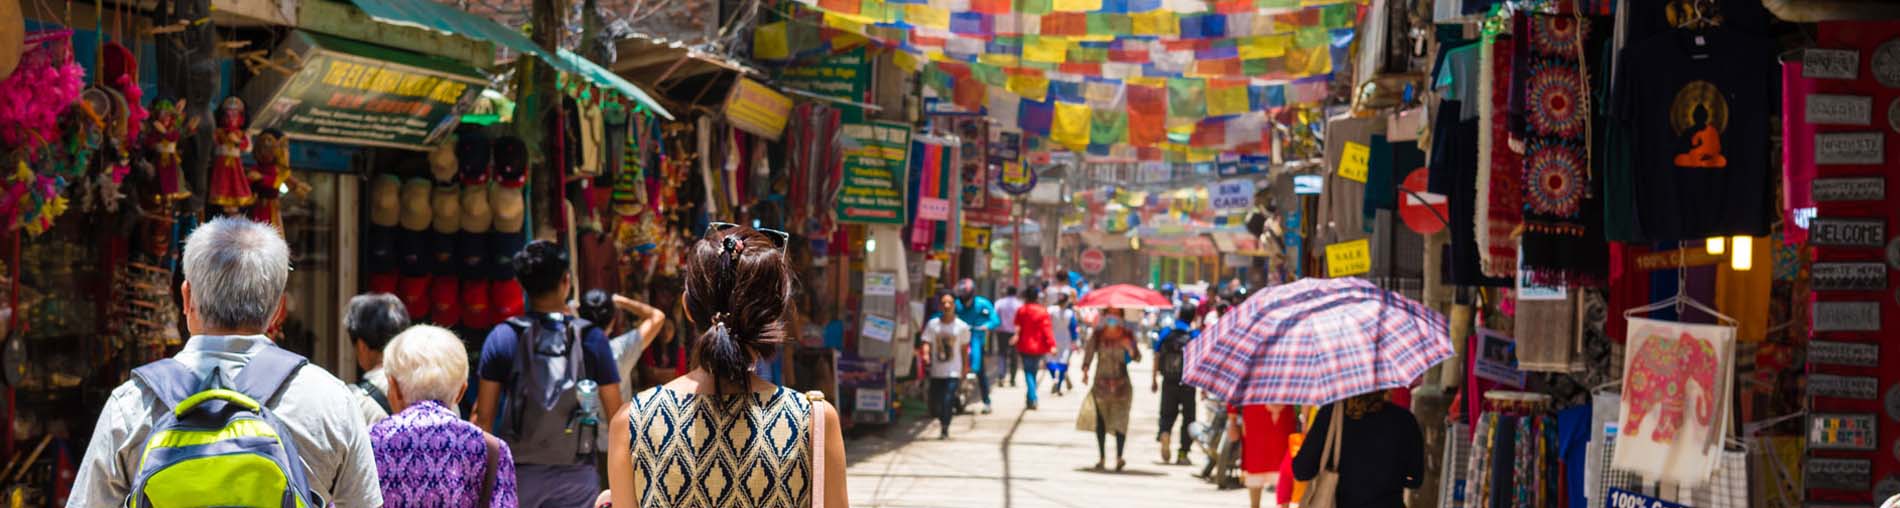 Shopping Spots In Nepal